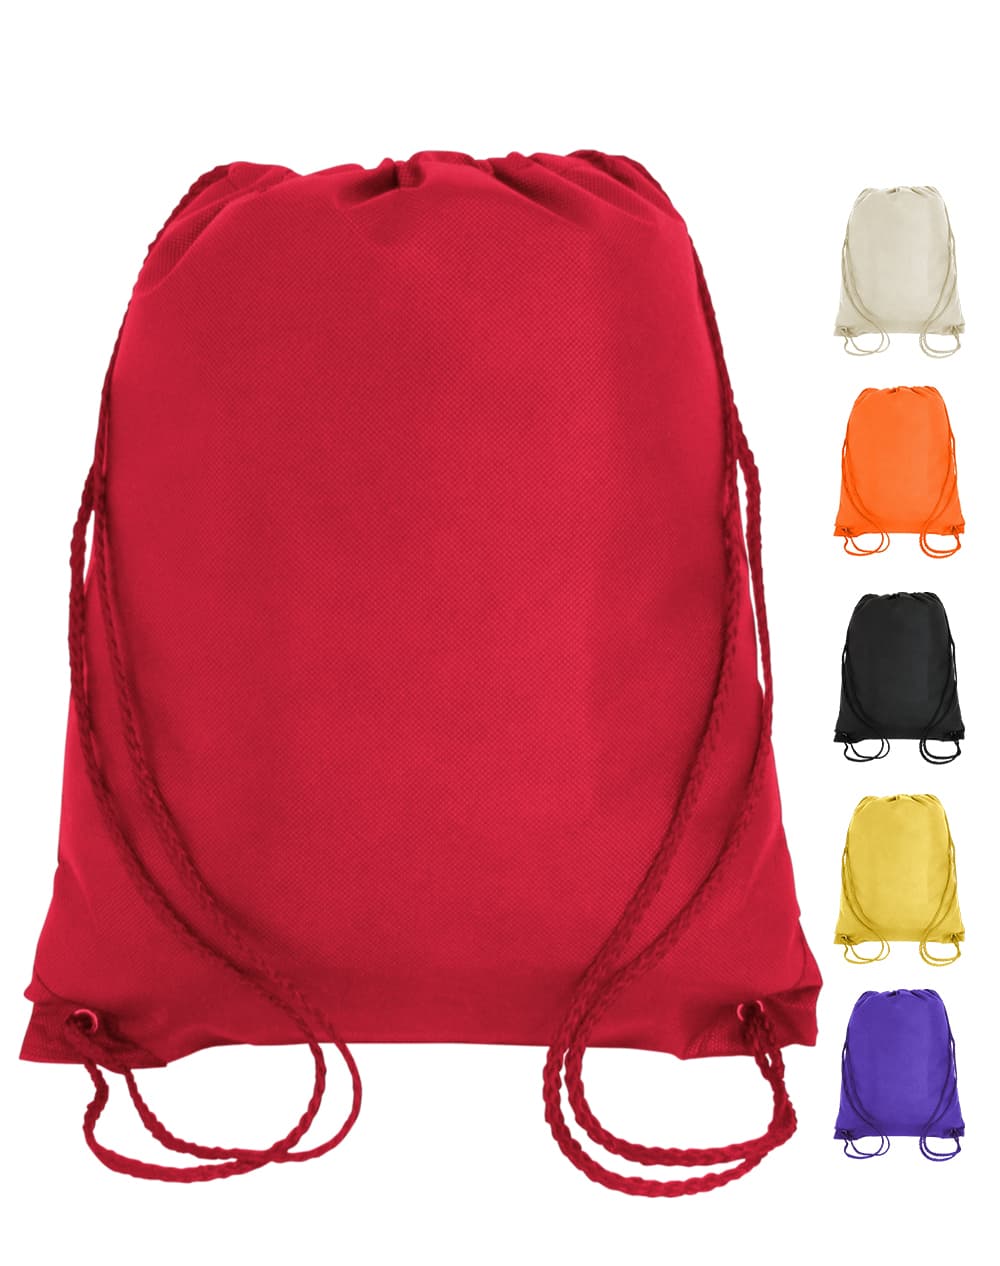 Cheap drawstring bags & backpacks for kids